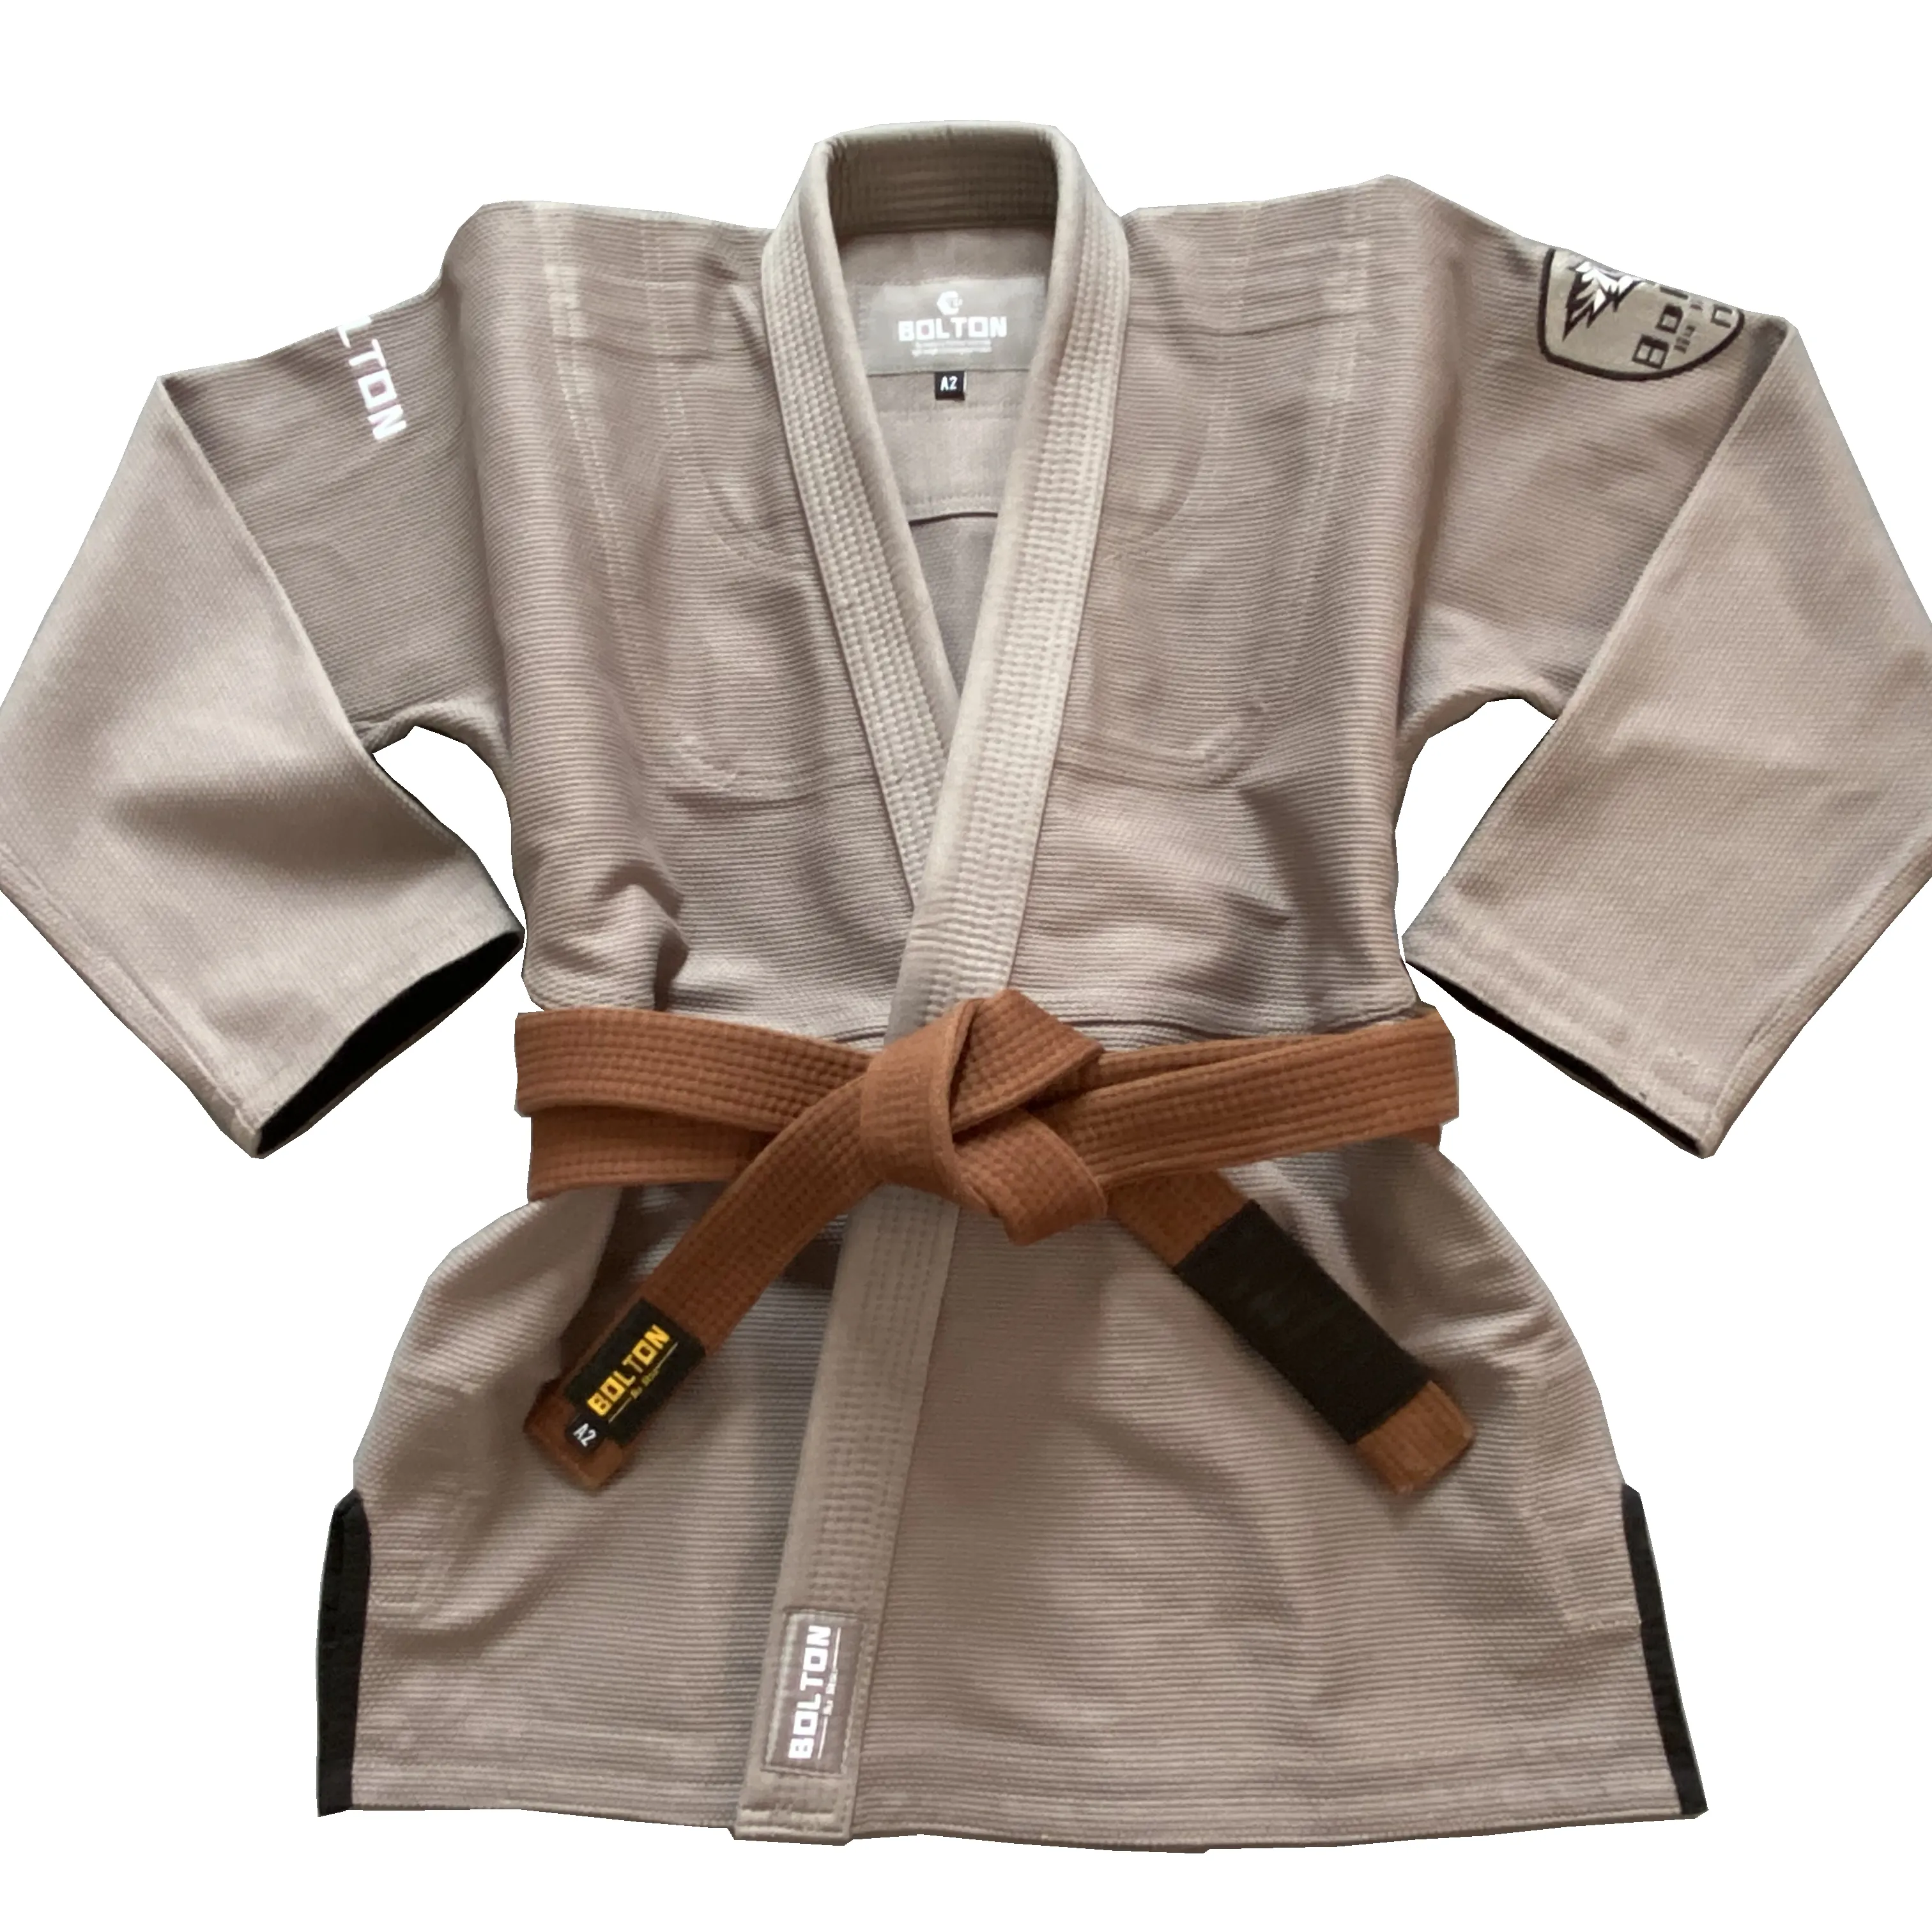 Fabricant professionnel de Kimono Gi Jiu Jitsu Gi Bjj jis BJJ uniforme brésilien